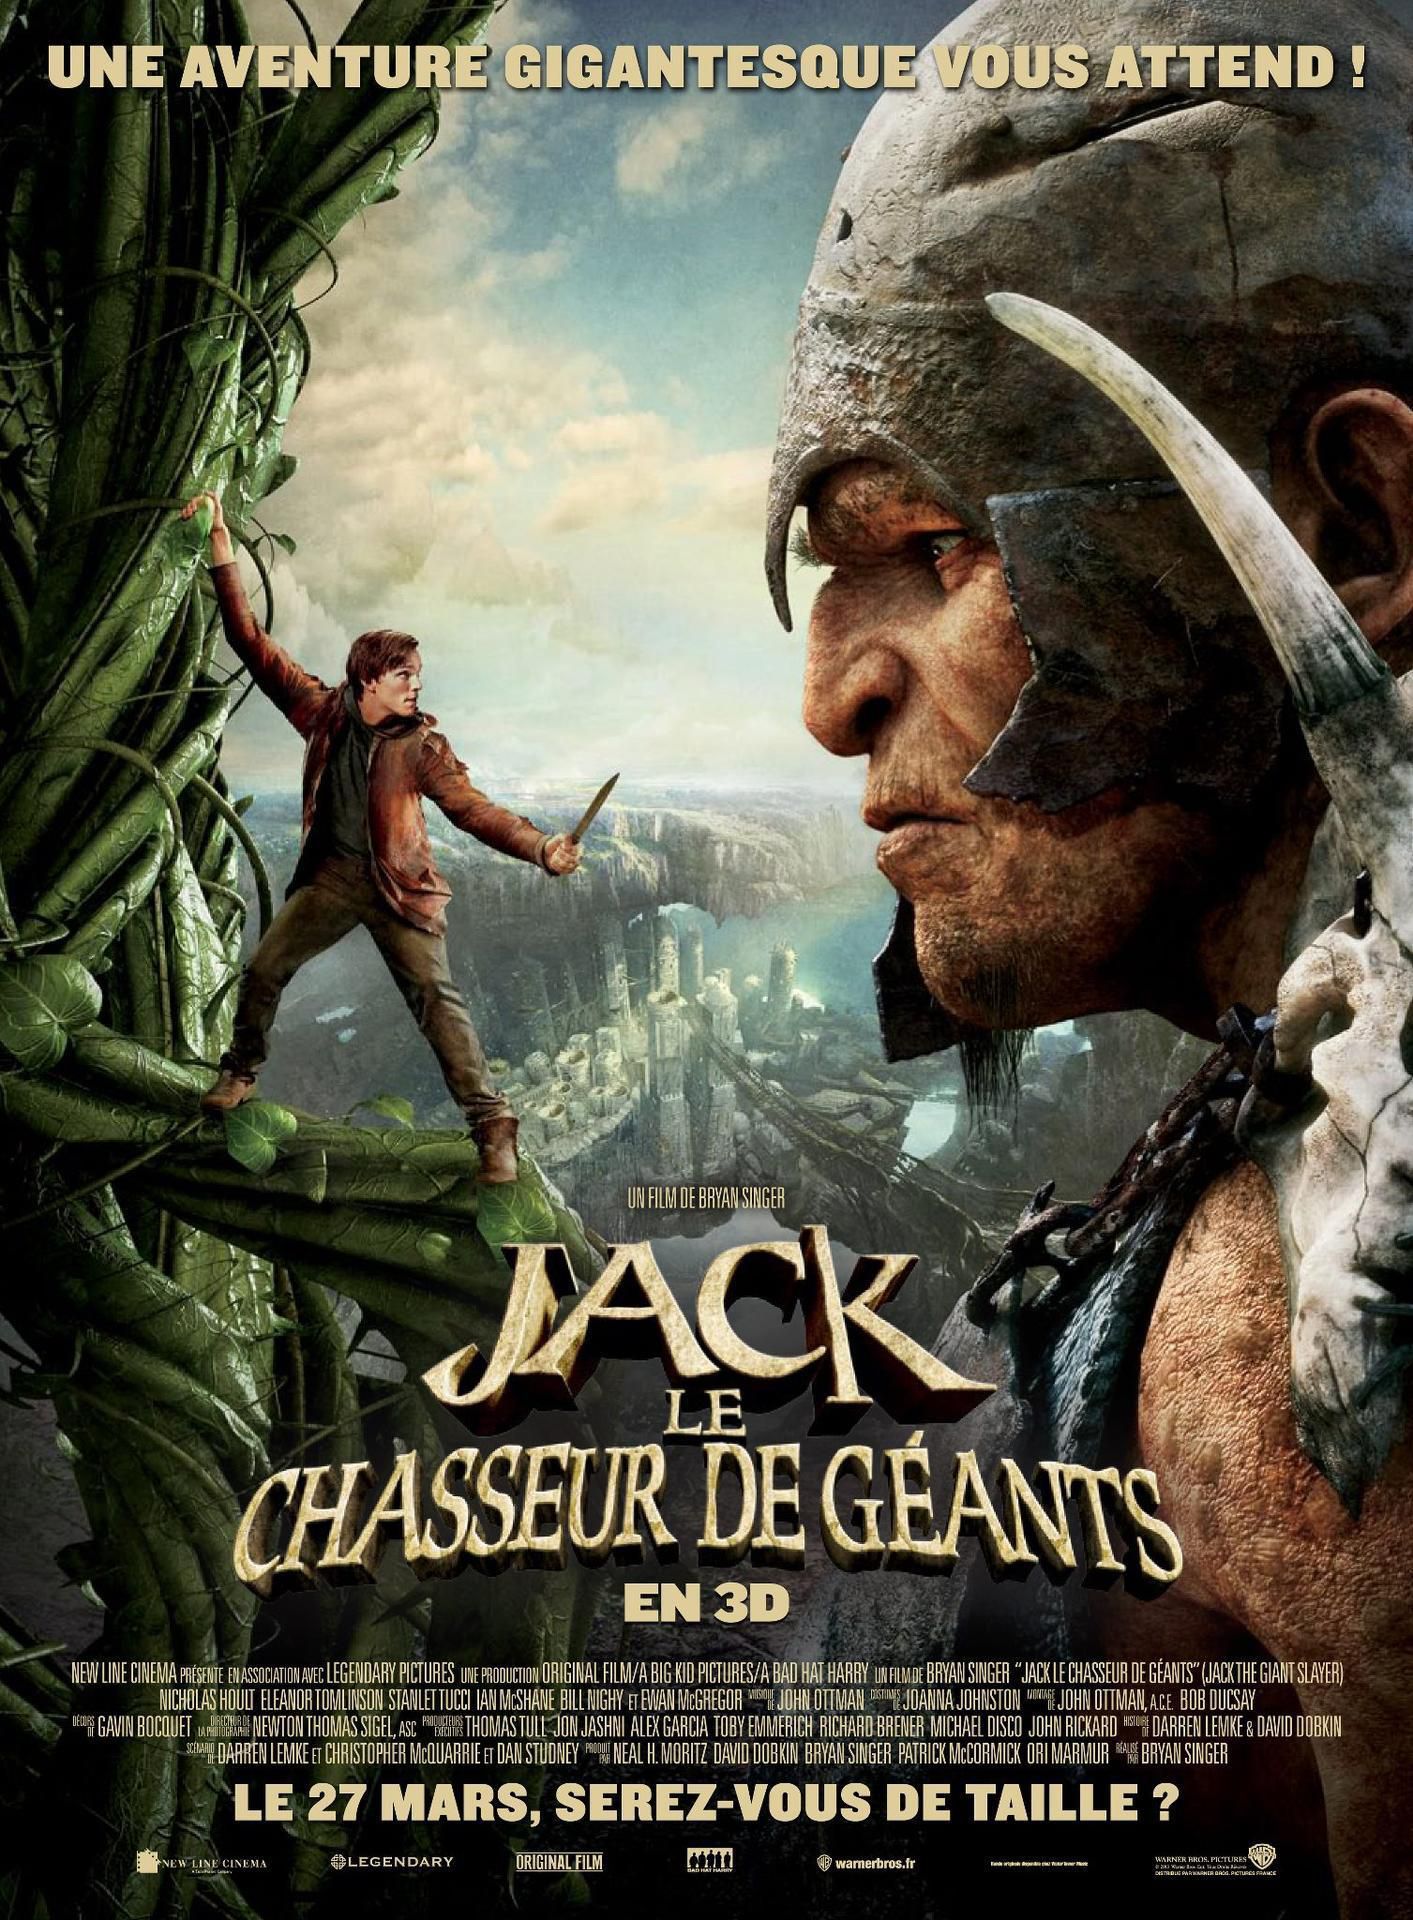 Jack le chasseur de géants - Film (2013) streaming VF gratuit complet